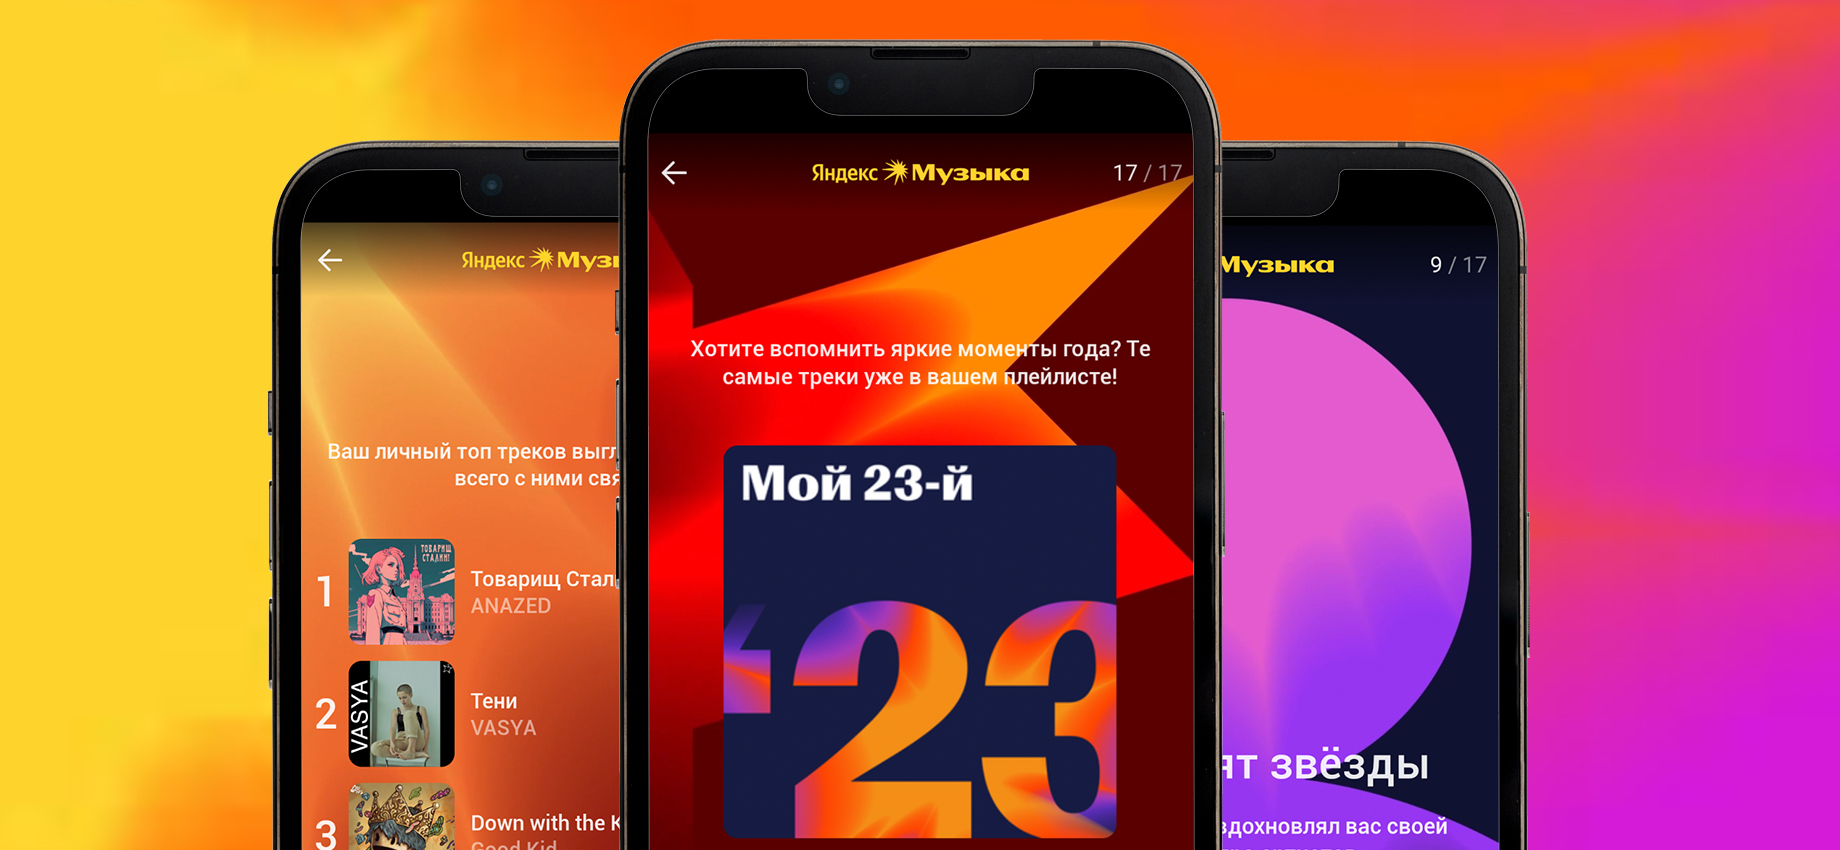 Не работает синхронизация с приложением Яндекс Музыки